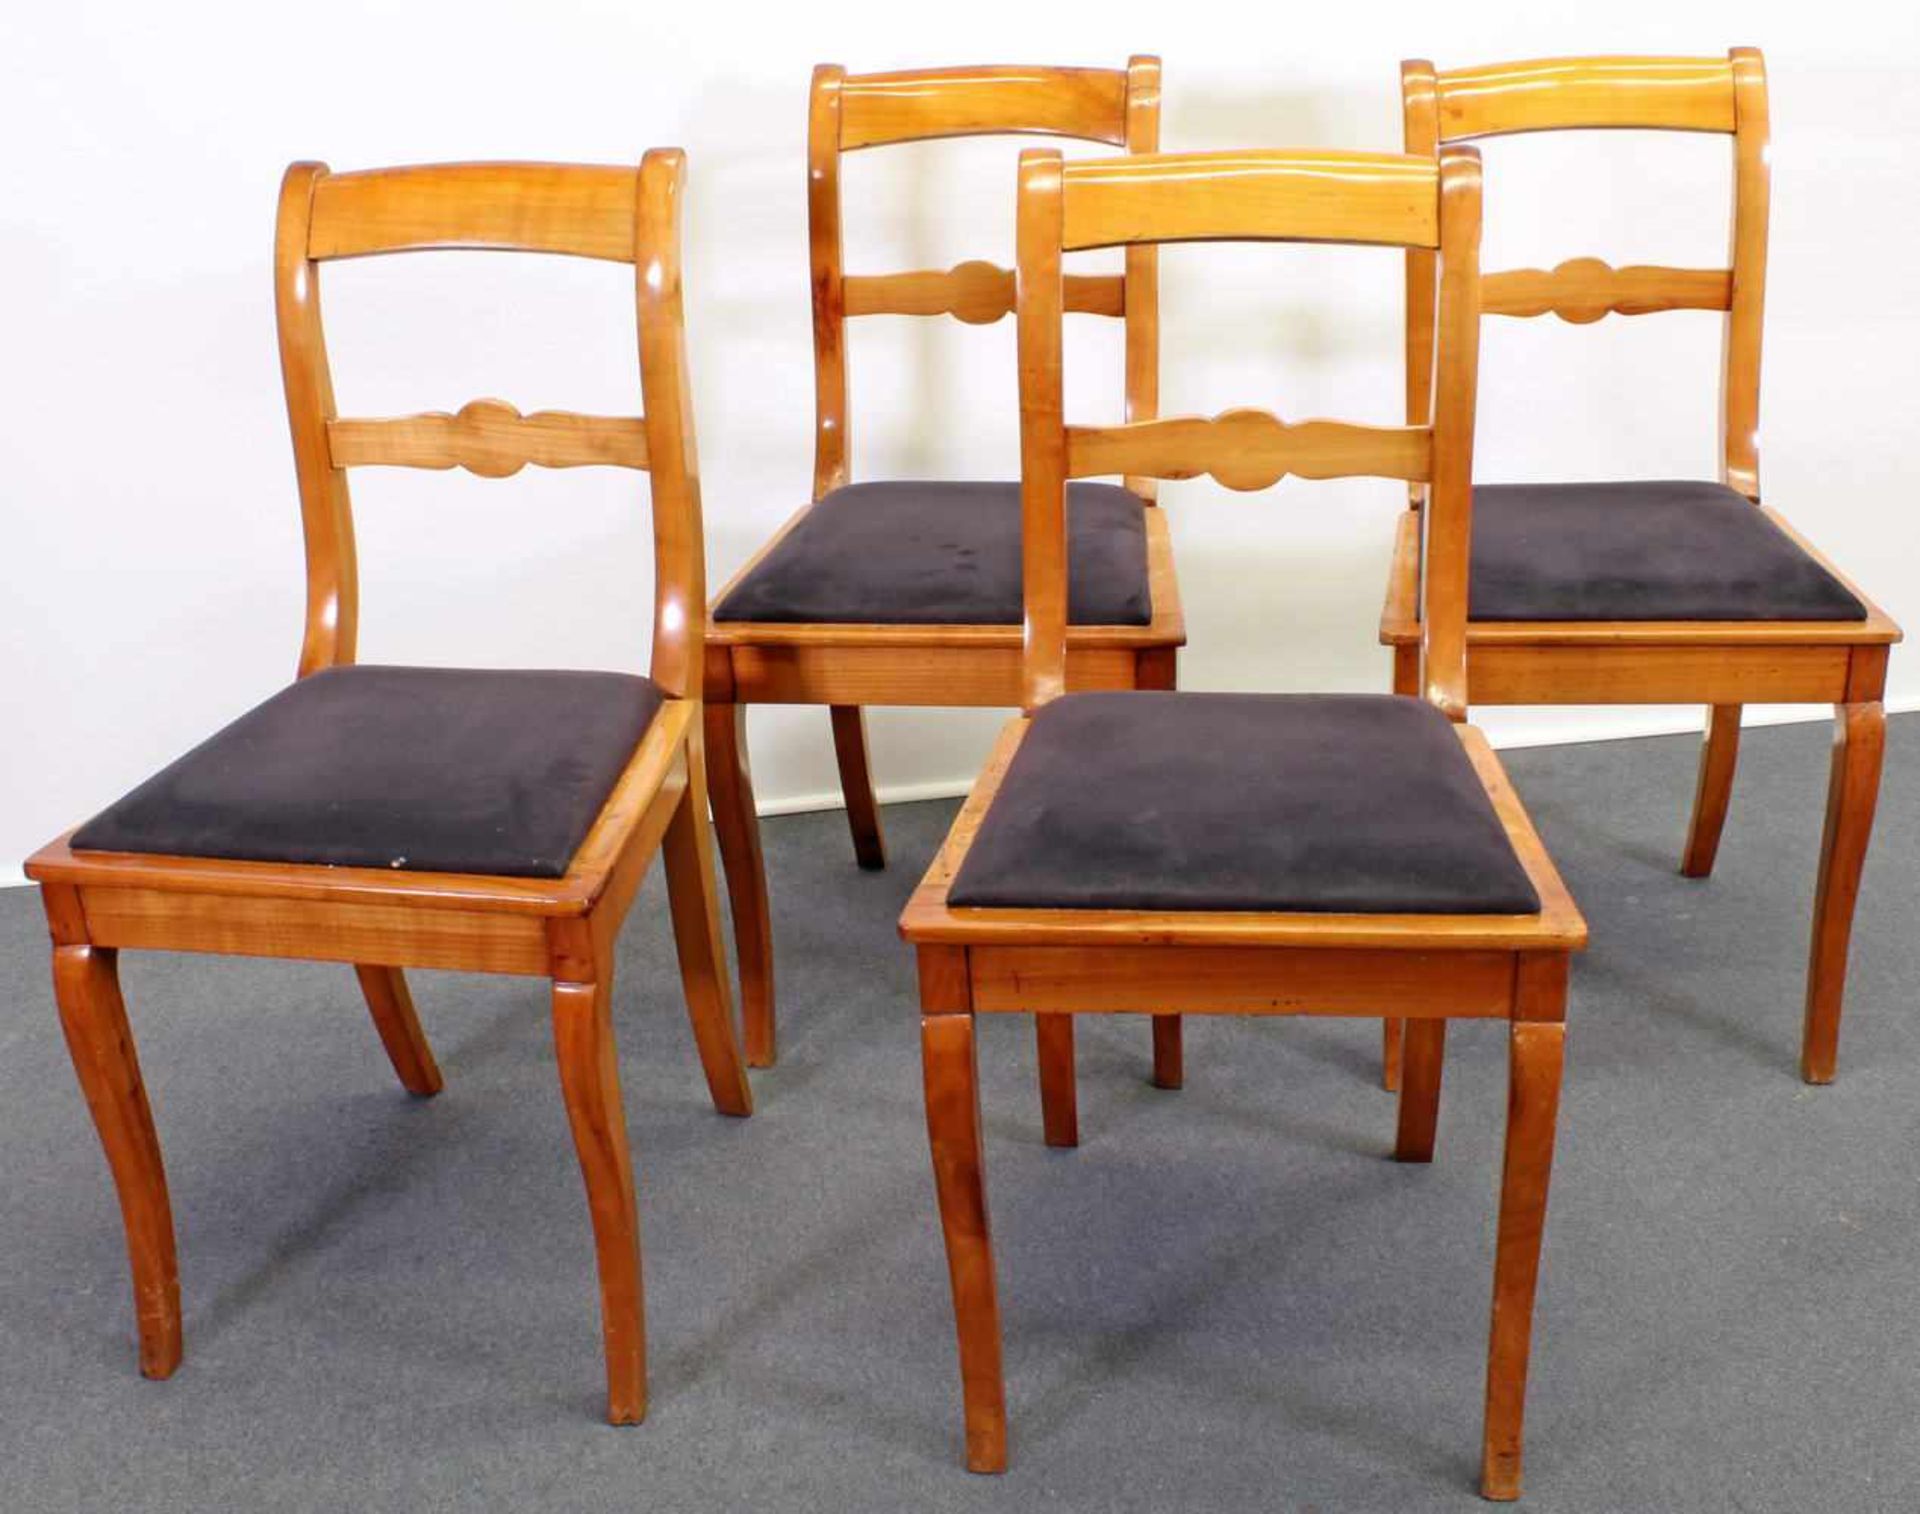 4 Stühle, Biedermeier, um 1840, Kirschbaum, erneuertes Sitzpolster<